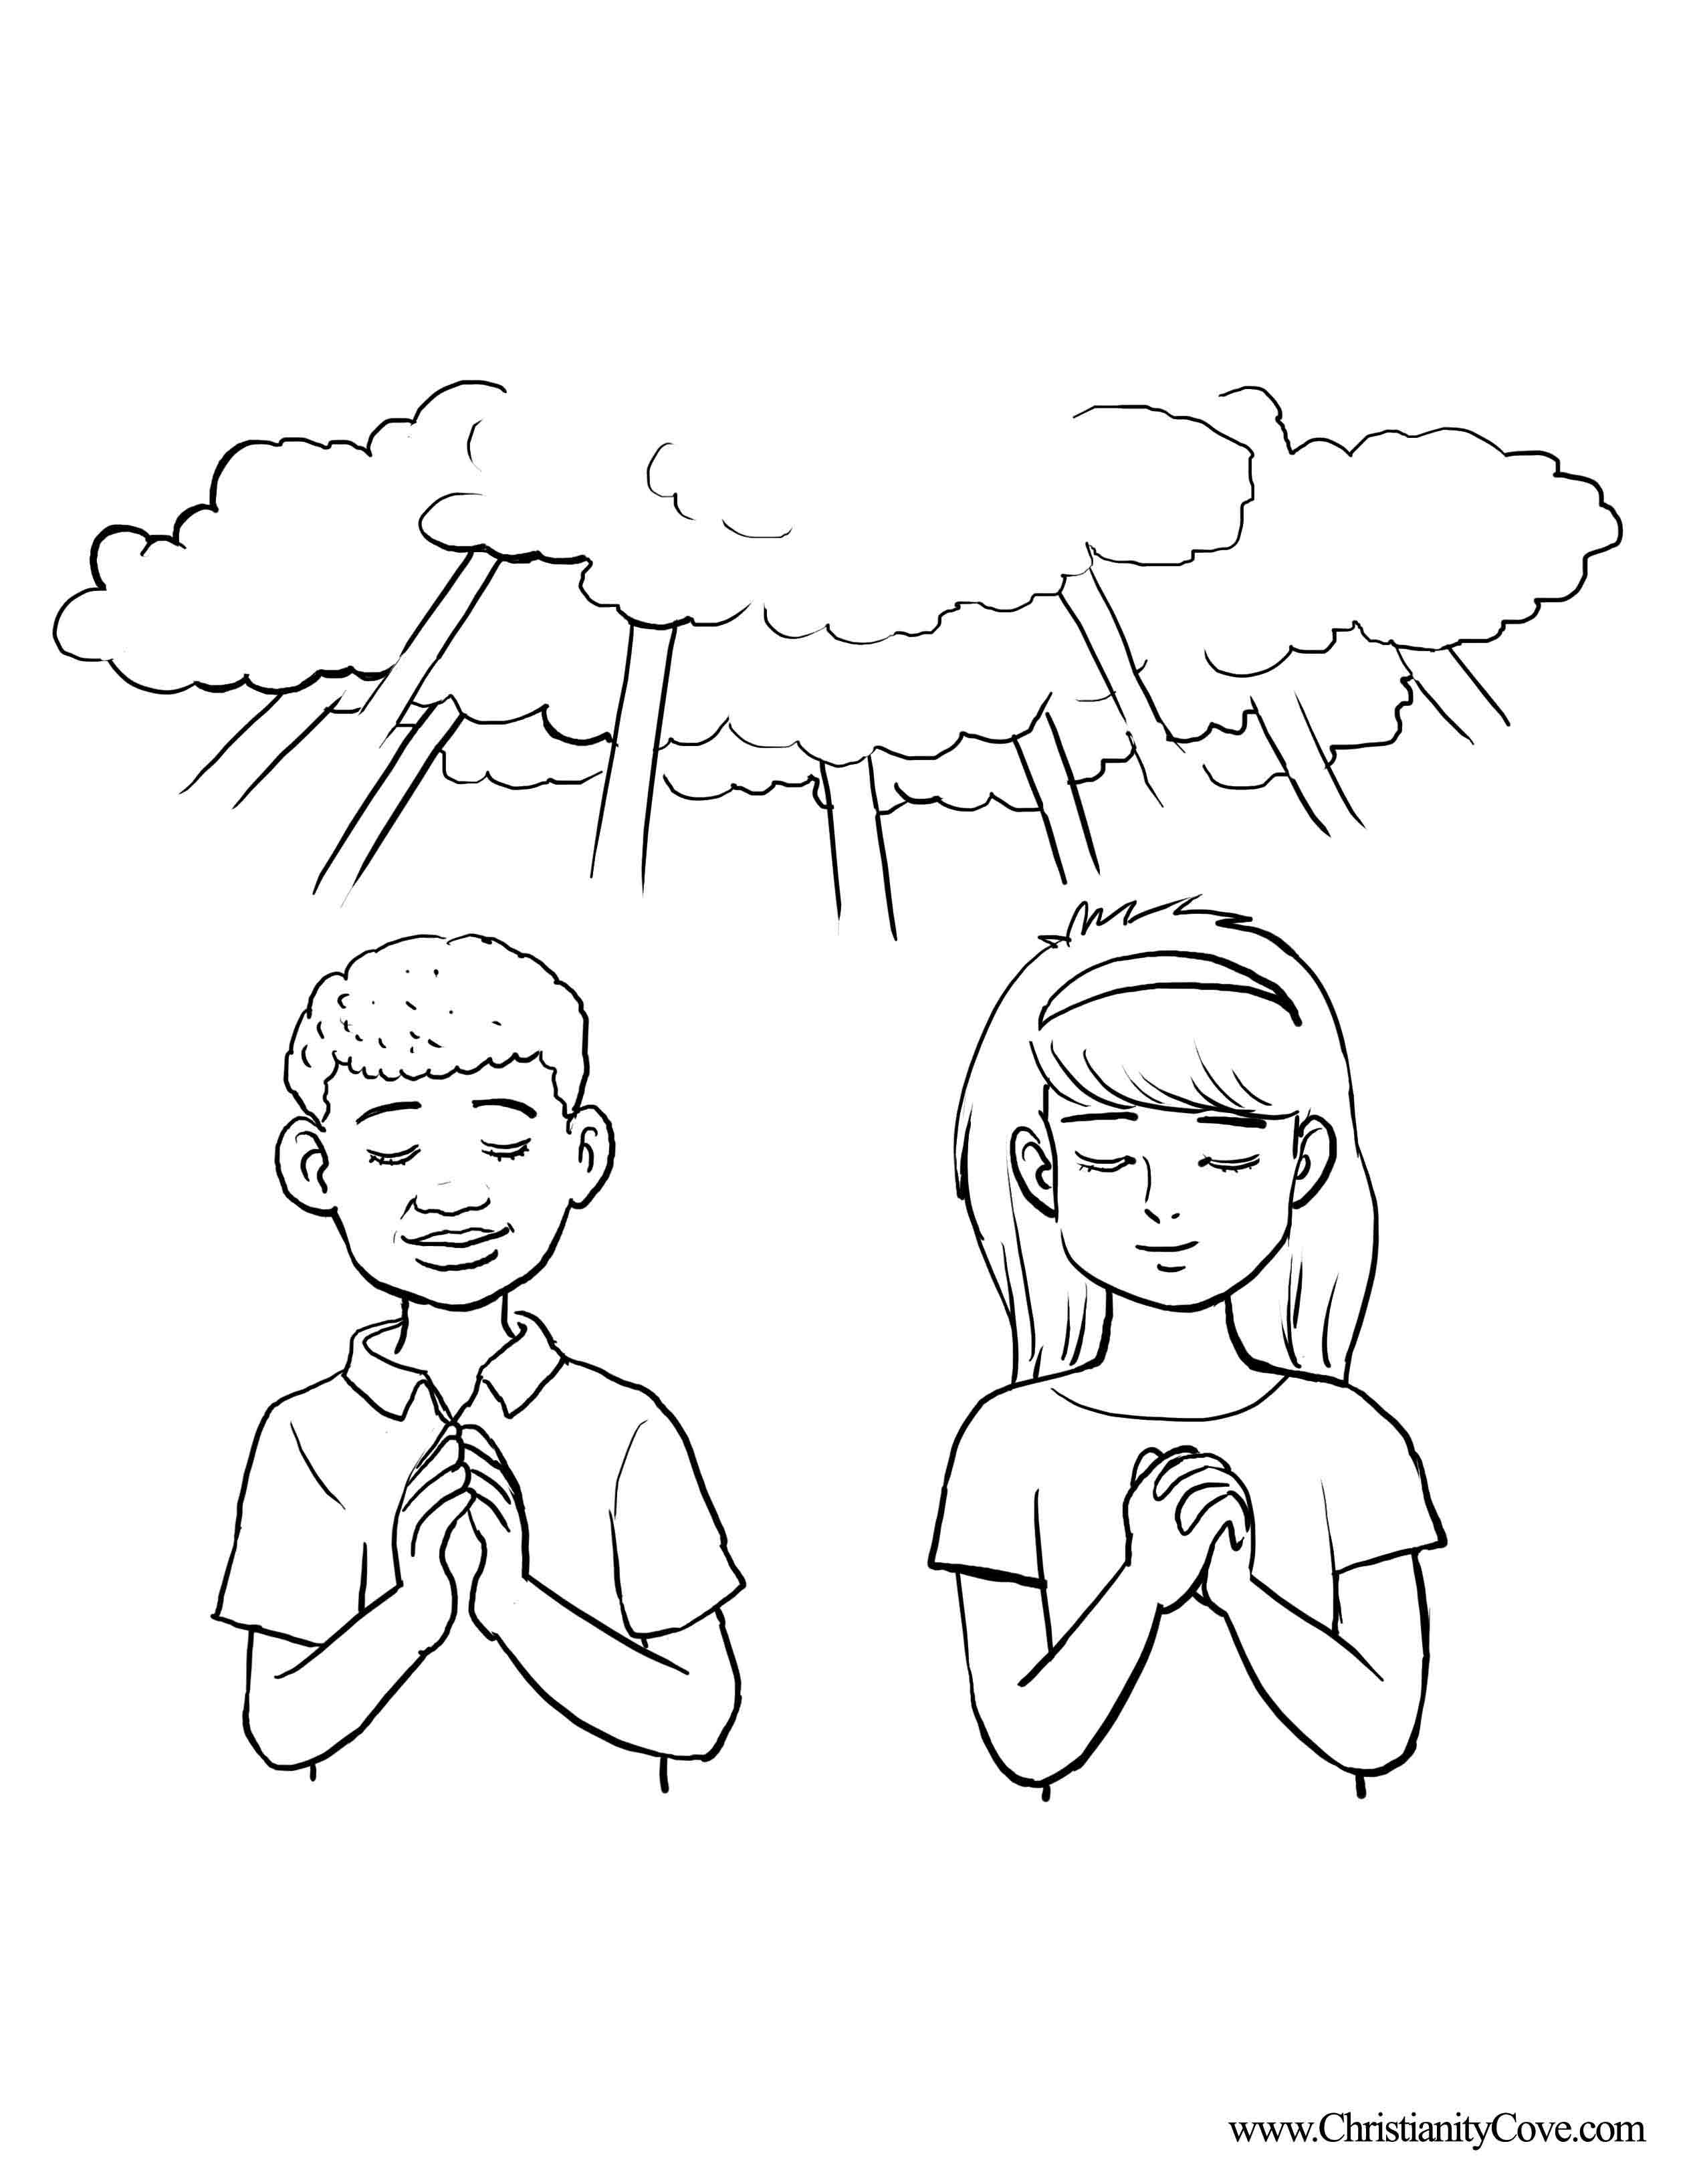 Praying Child Drawing at GetDrawings | Free download